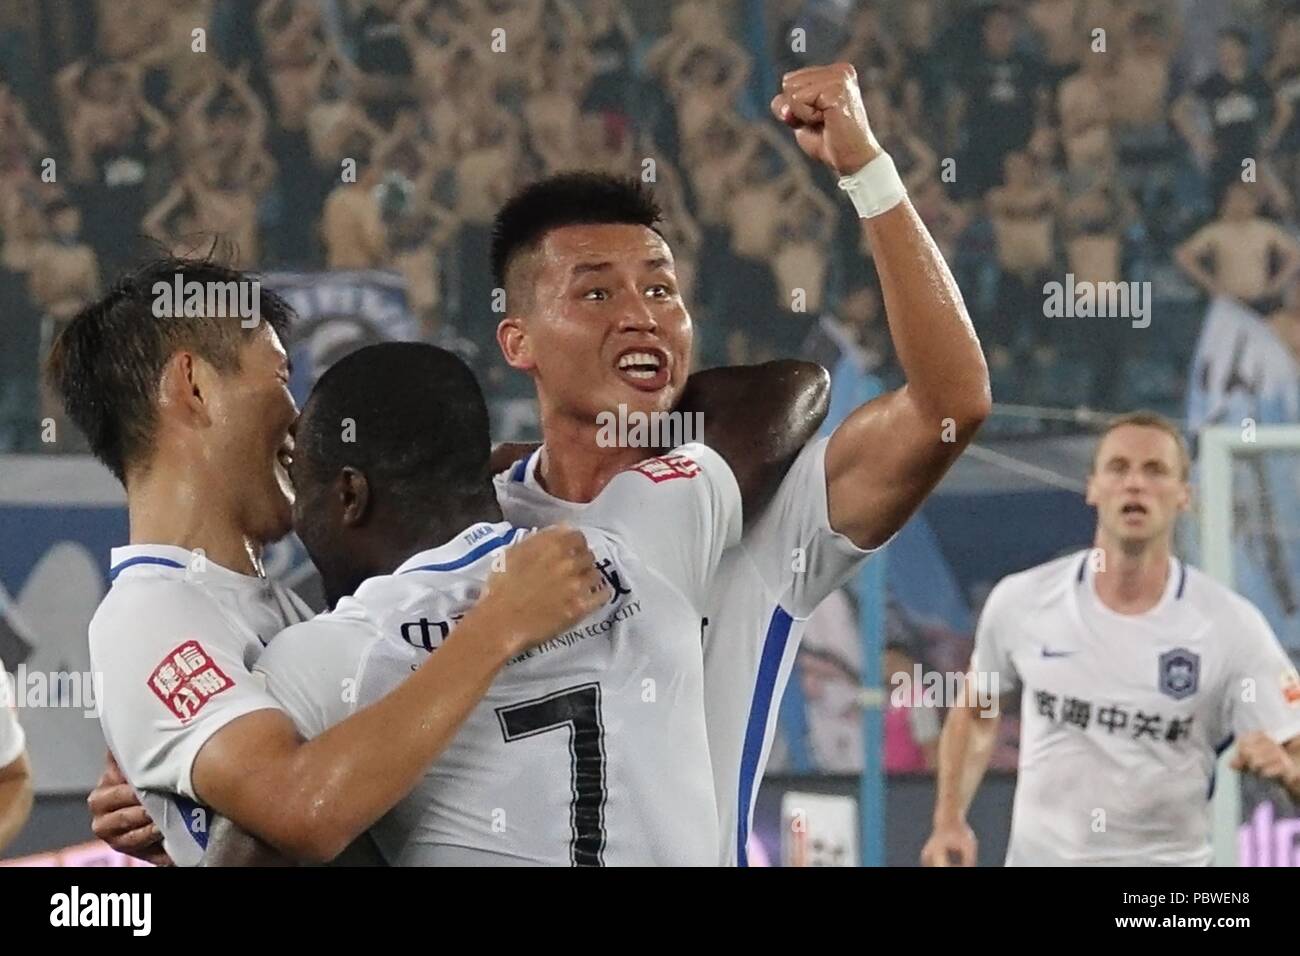 Tianji, Tianji, China. 30th July, 2018. Tianjin, CHINA-Tianjin Taida Football Team defeats Dalian Yifang 3-2 at 2018 Chinese Super League in north China's Tianjin. Credit: SIPA Asia/ZUMA Wire/Alamy Live News Stock Photo